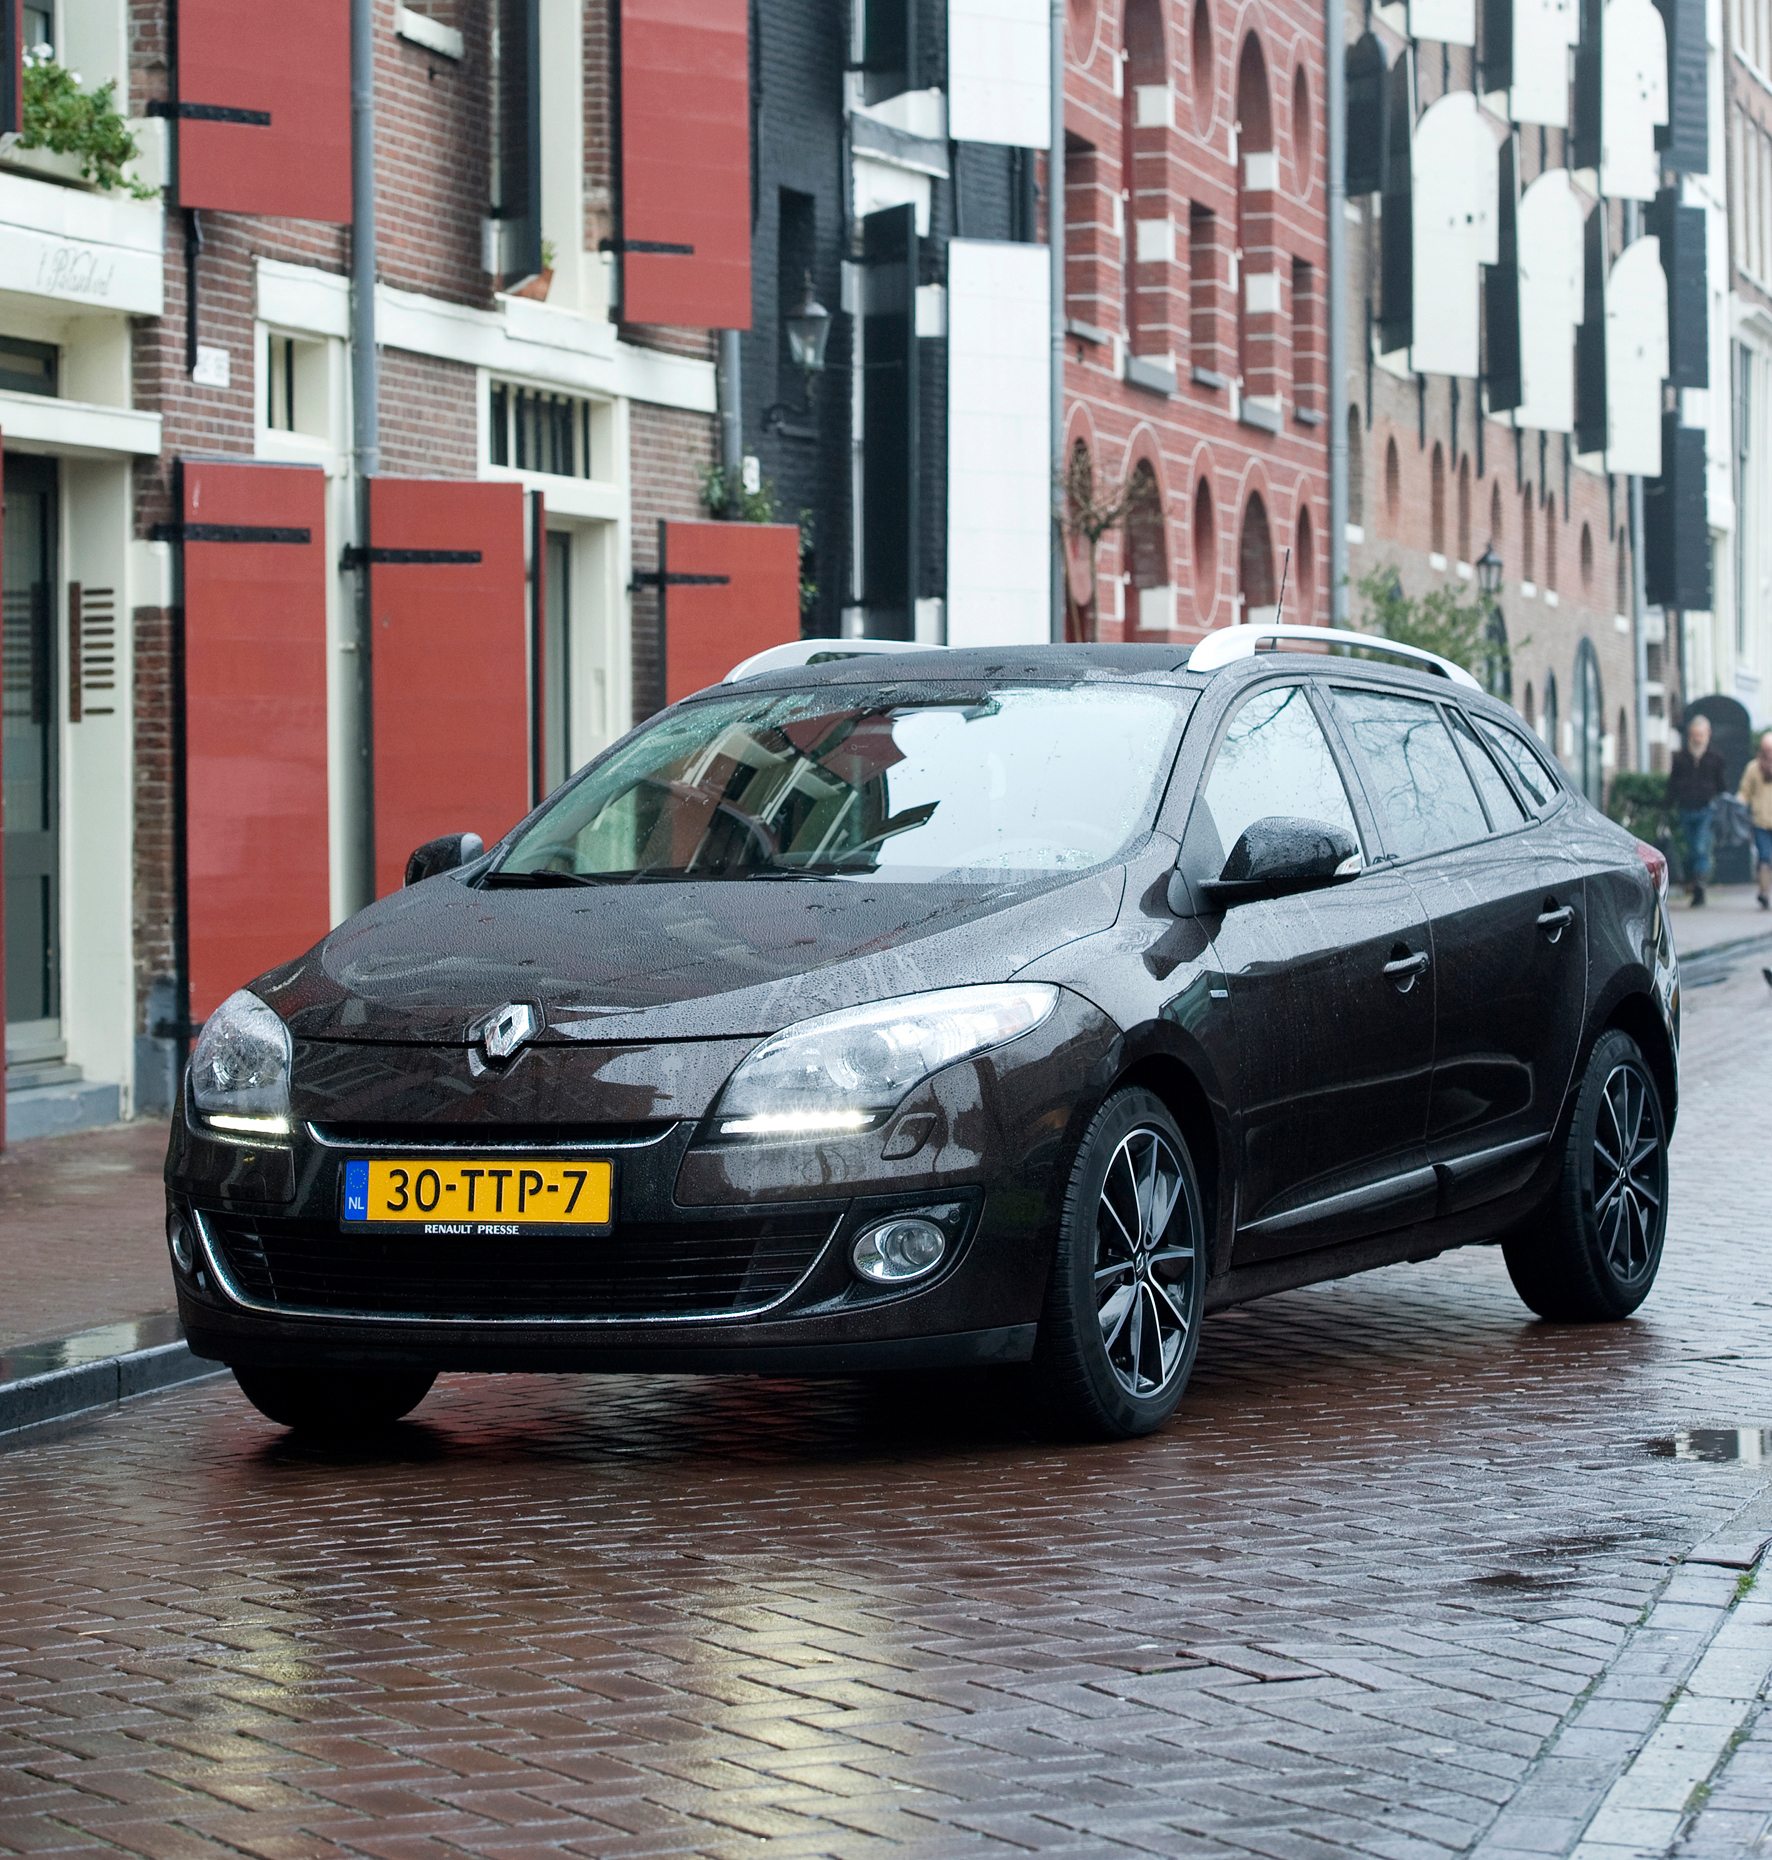 Wens Per Snelkoppelingen Renault Mégane bestverkochte auto van Nederland in 2012